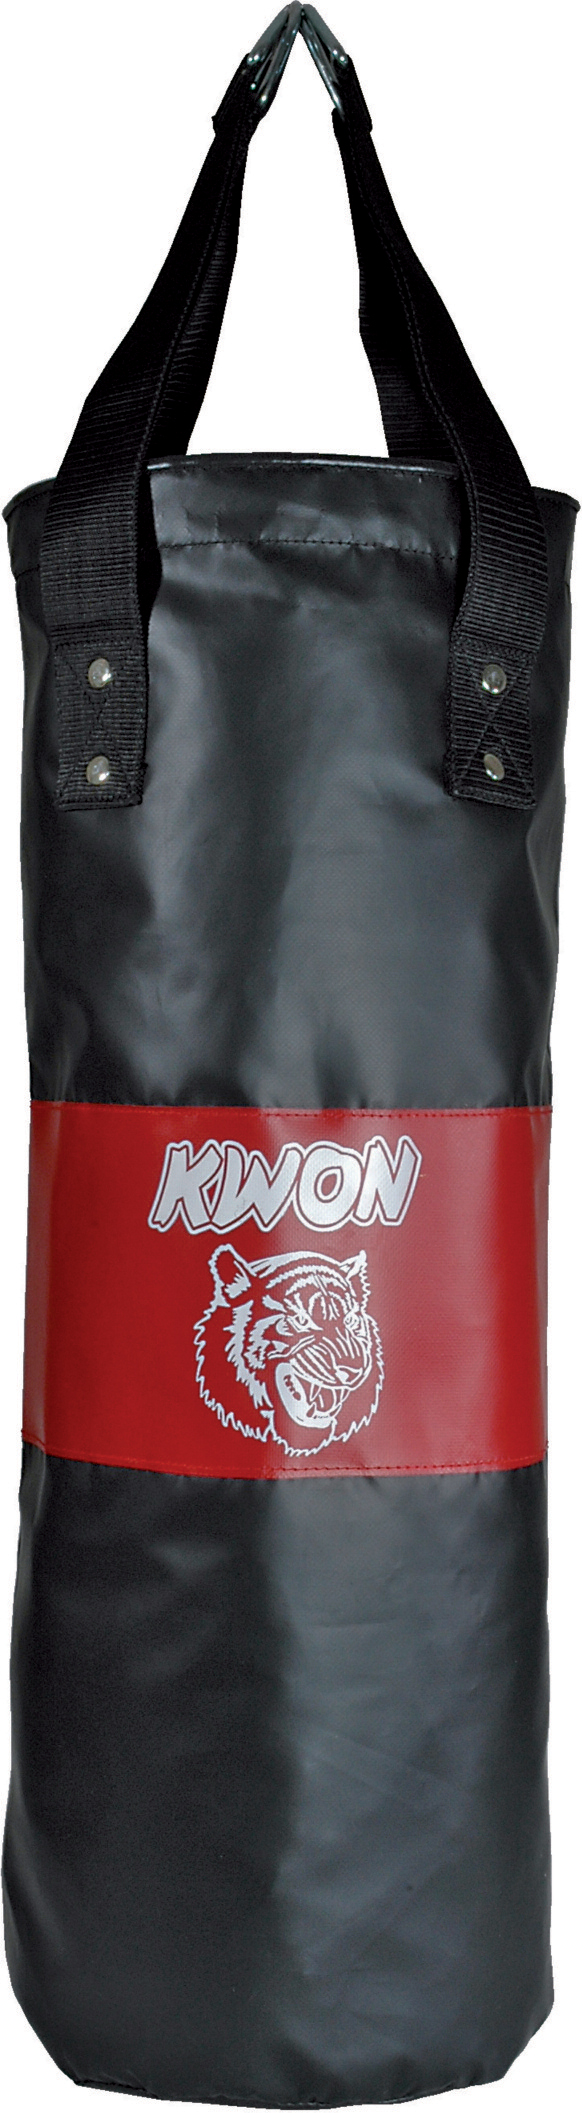 Kwon Kinder Boxsack für jugendliche Tiger